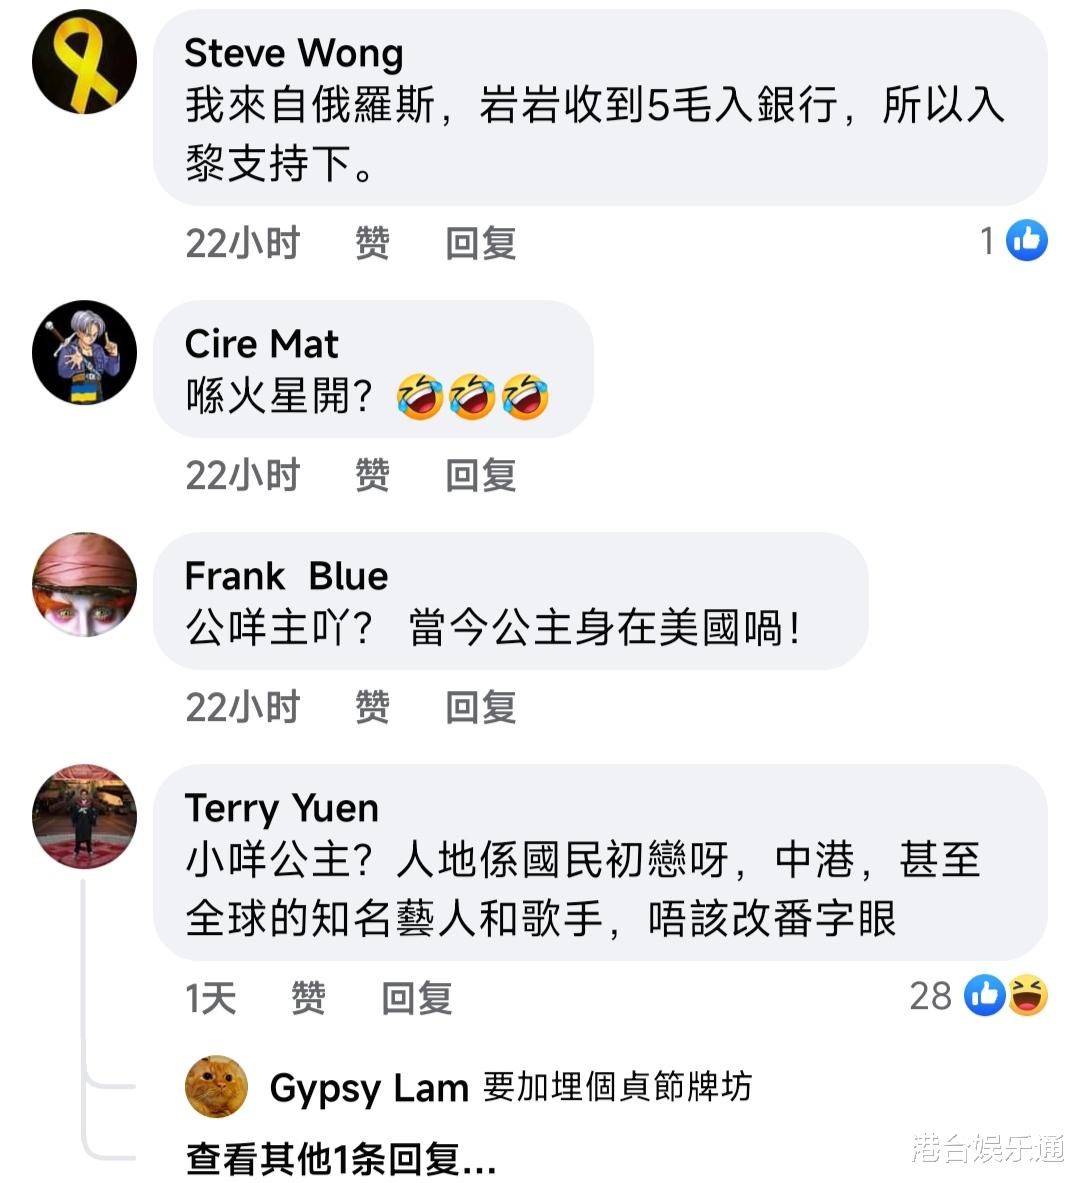 不满炎明熹开音乐会？TVB脸书账号官宣消息，对家粉丝竟涌入攻击